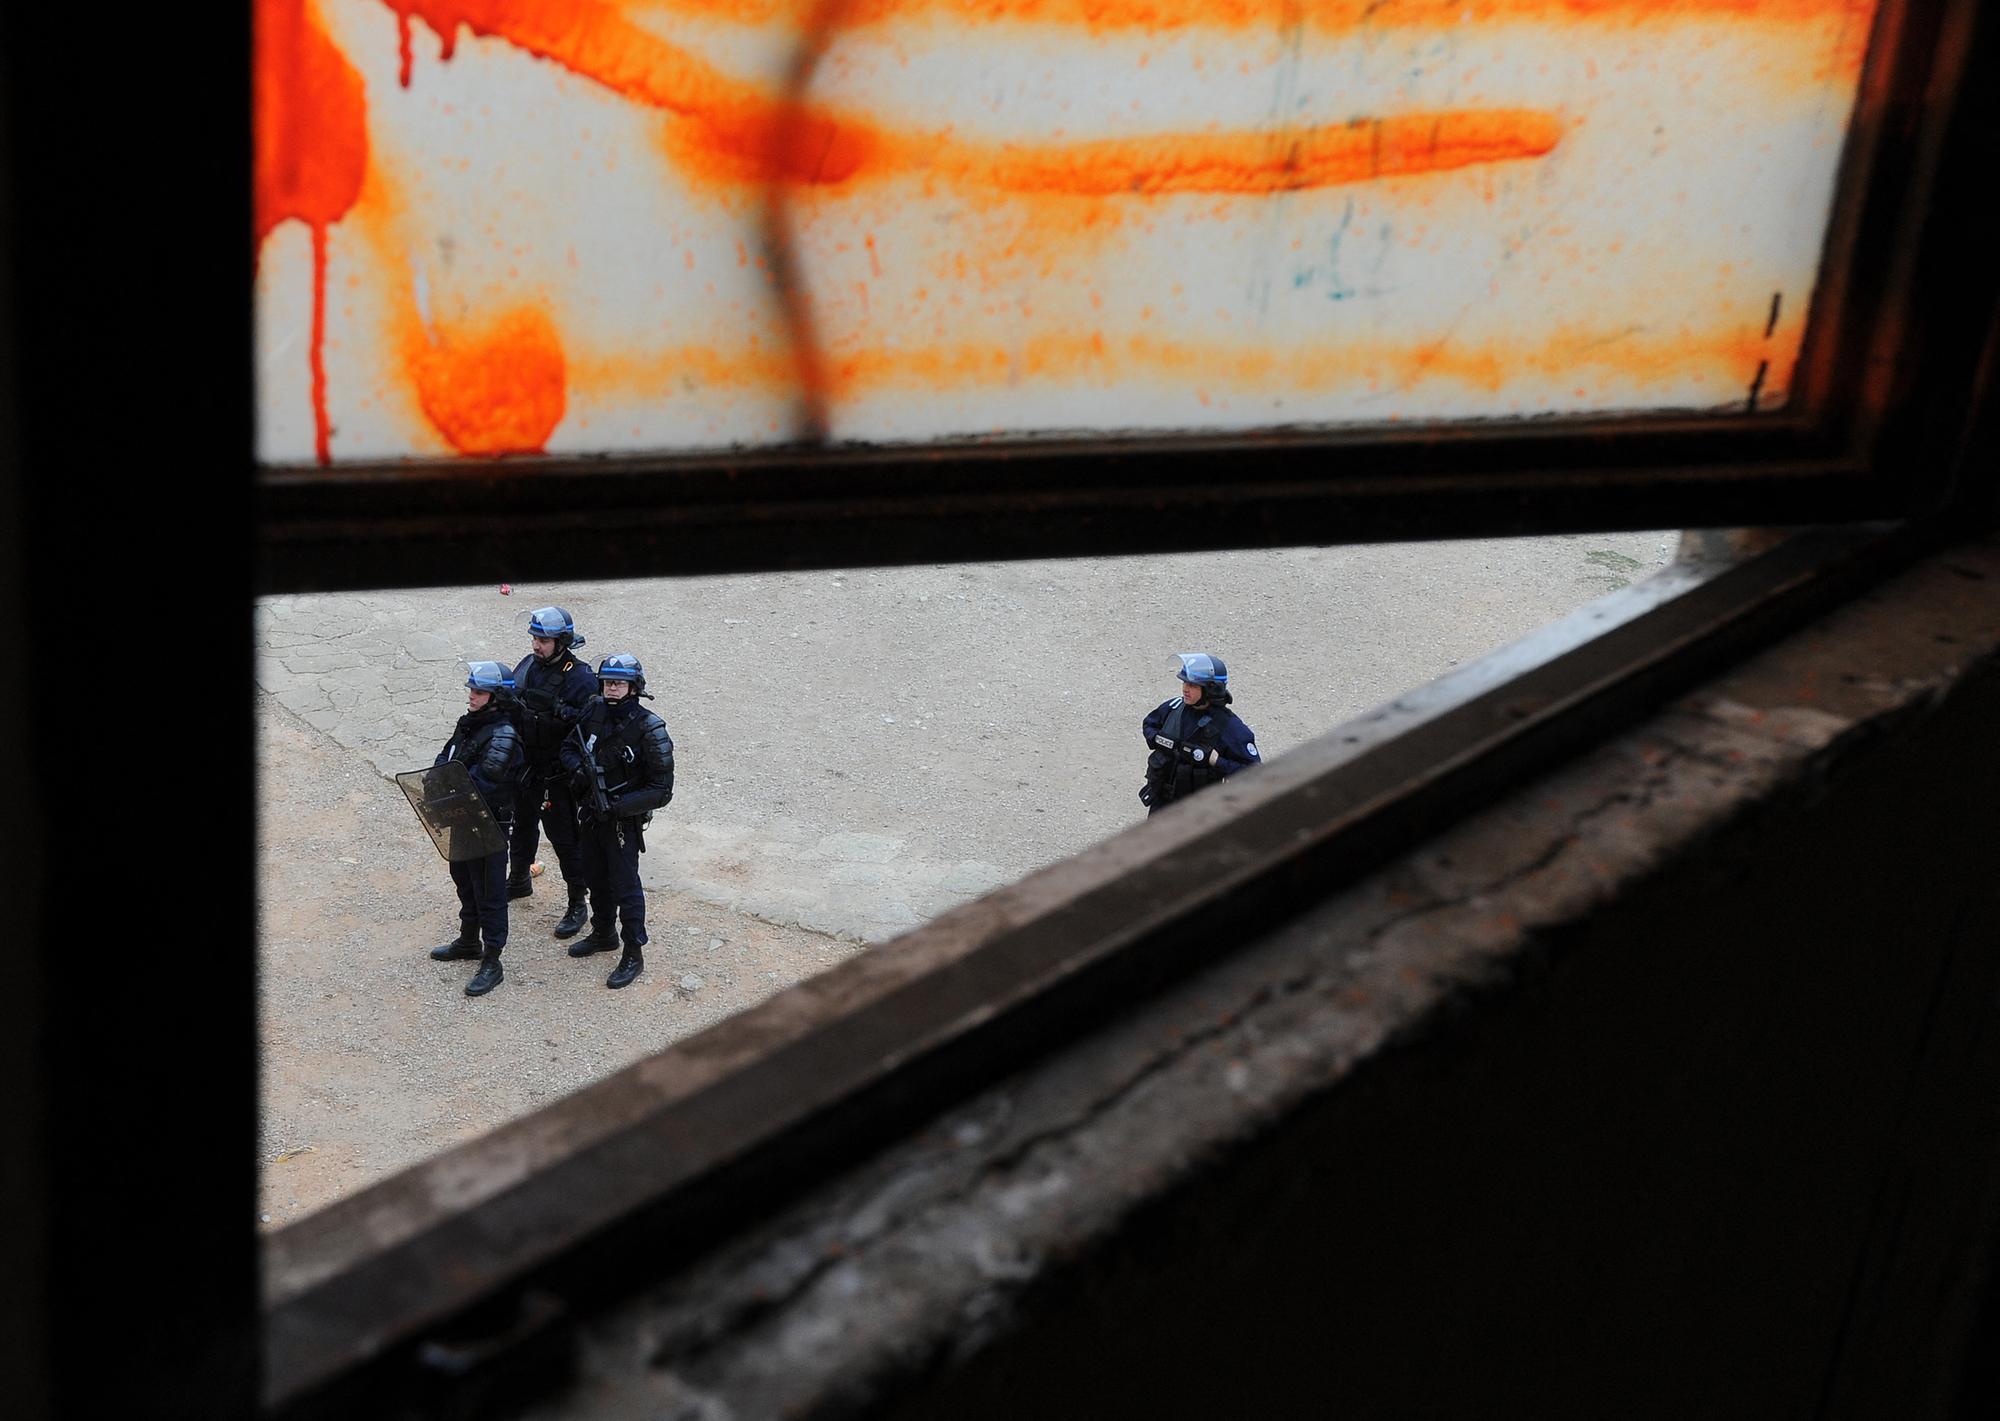 La vue depuis une fenêtre de la police lors d'une saisie de drogue à Bassens (Marseille) le 12 janvier 2012. [AFP - Julien Gerard]